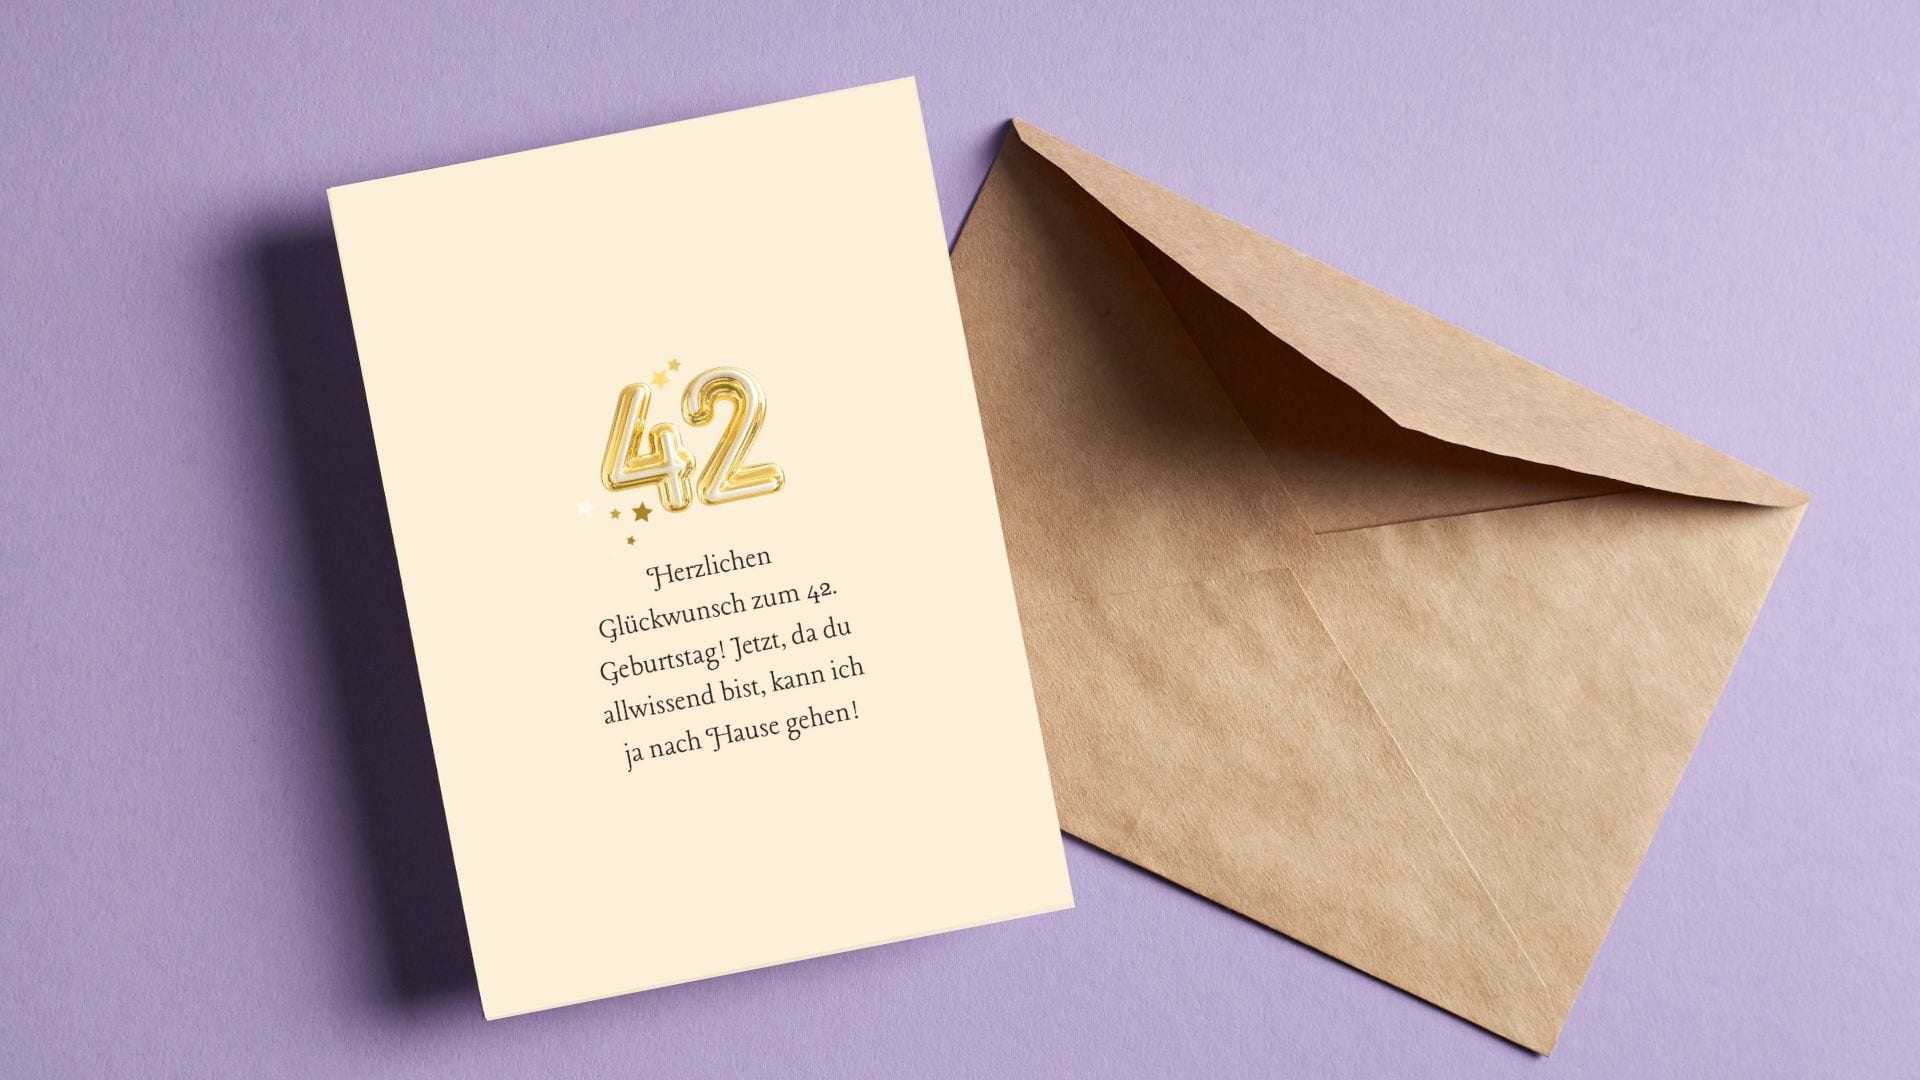 Umschlag und eine süße Karte mit einem lustigen Wunsch zum 42. Geburtstag